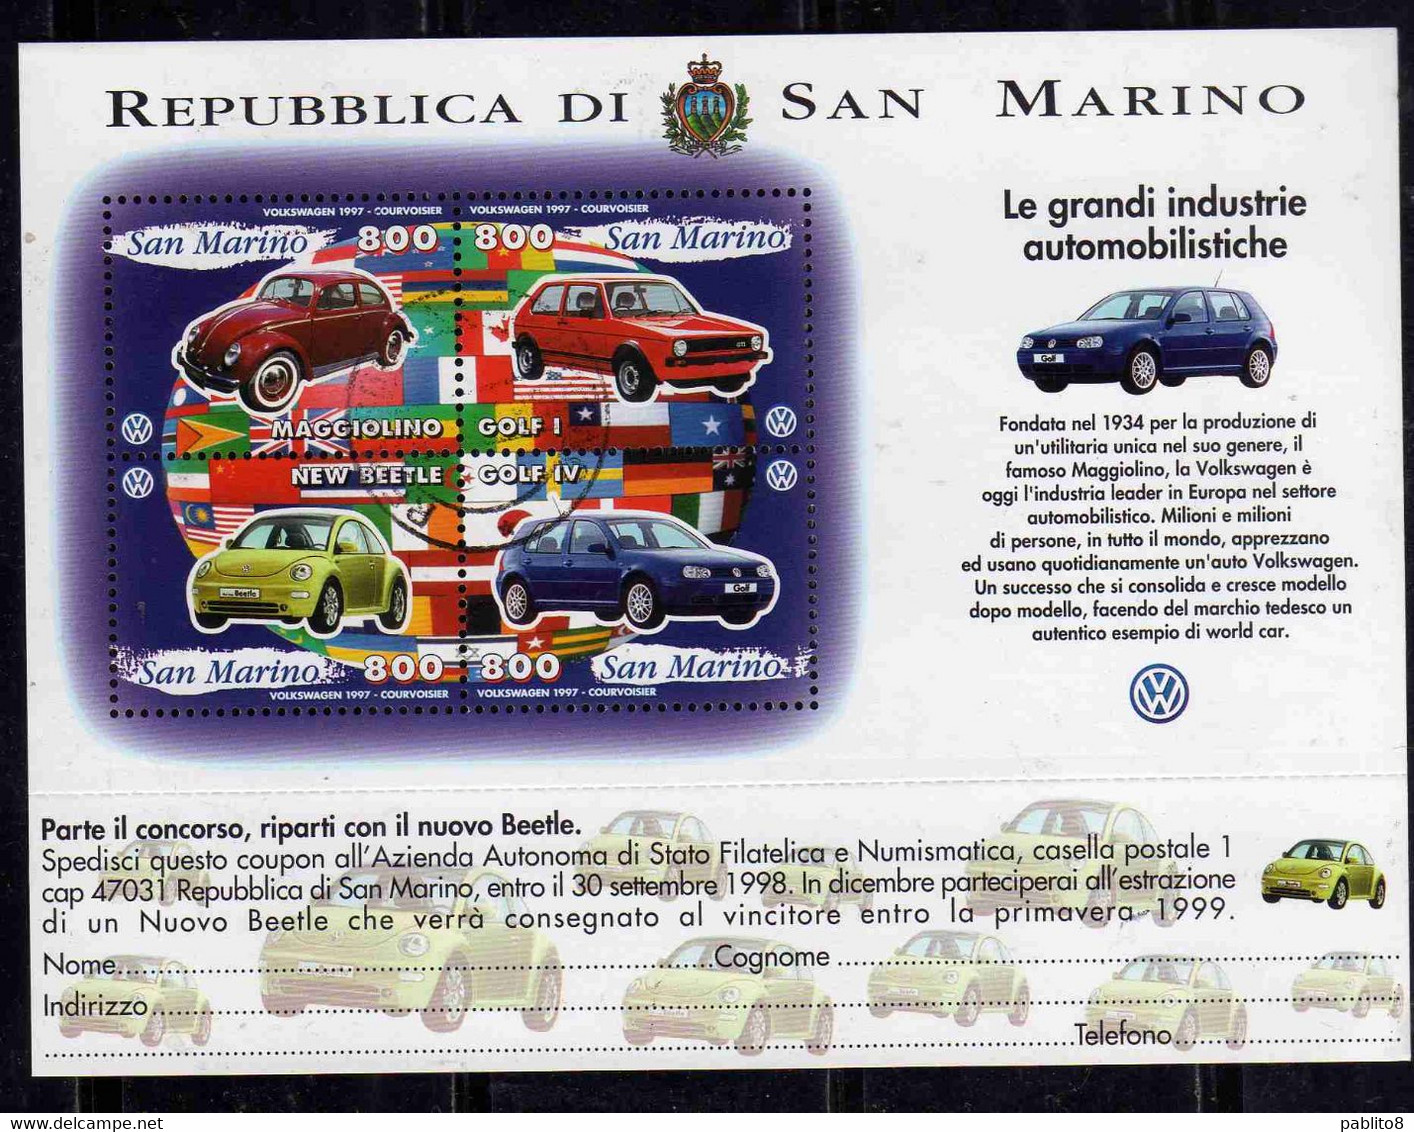 REPUBBLICA DI SAN MARINO 1997 LE GRANDI INDUSTRIE AUTOMOBILISTICHE VOLKSWAGEN BLOCCO FOGLIETTO BLOCK SHEET USATO USED - Gebraucht